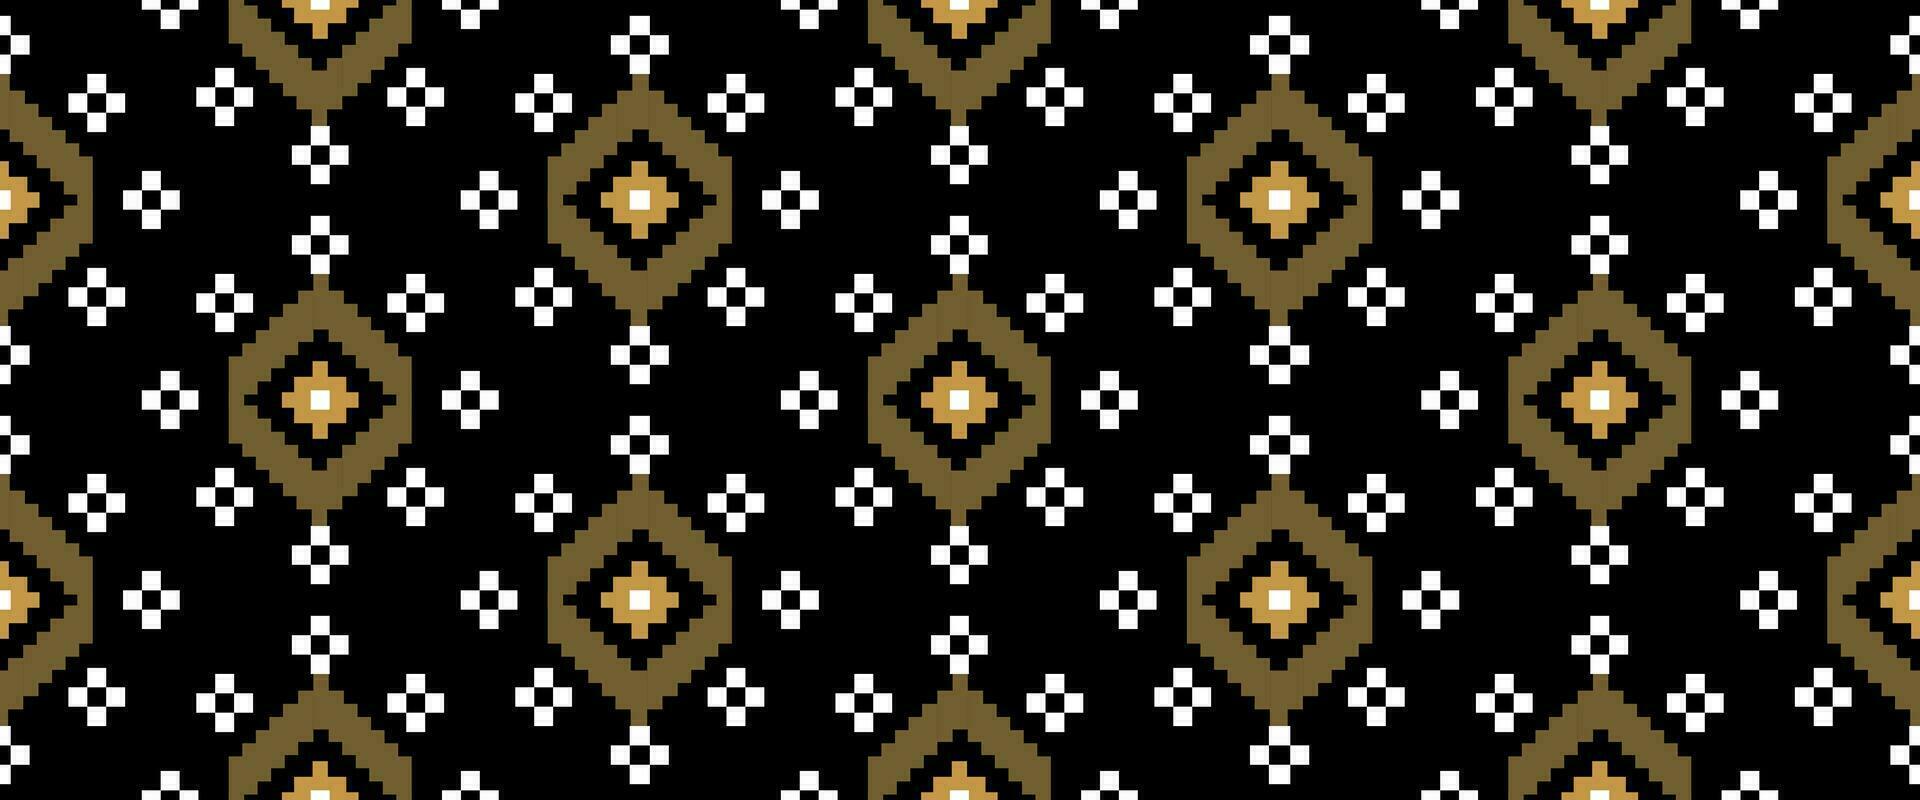 kruissteek. etnisch patronen. Indisch meetkundig patroon inheems patroon. zwart achtergrond. afdrukken kleding stof, textiel, kleding, breigoed. vector